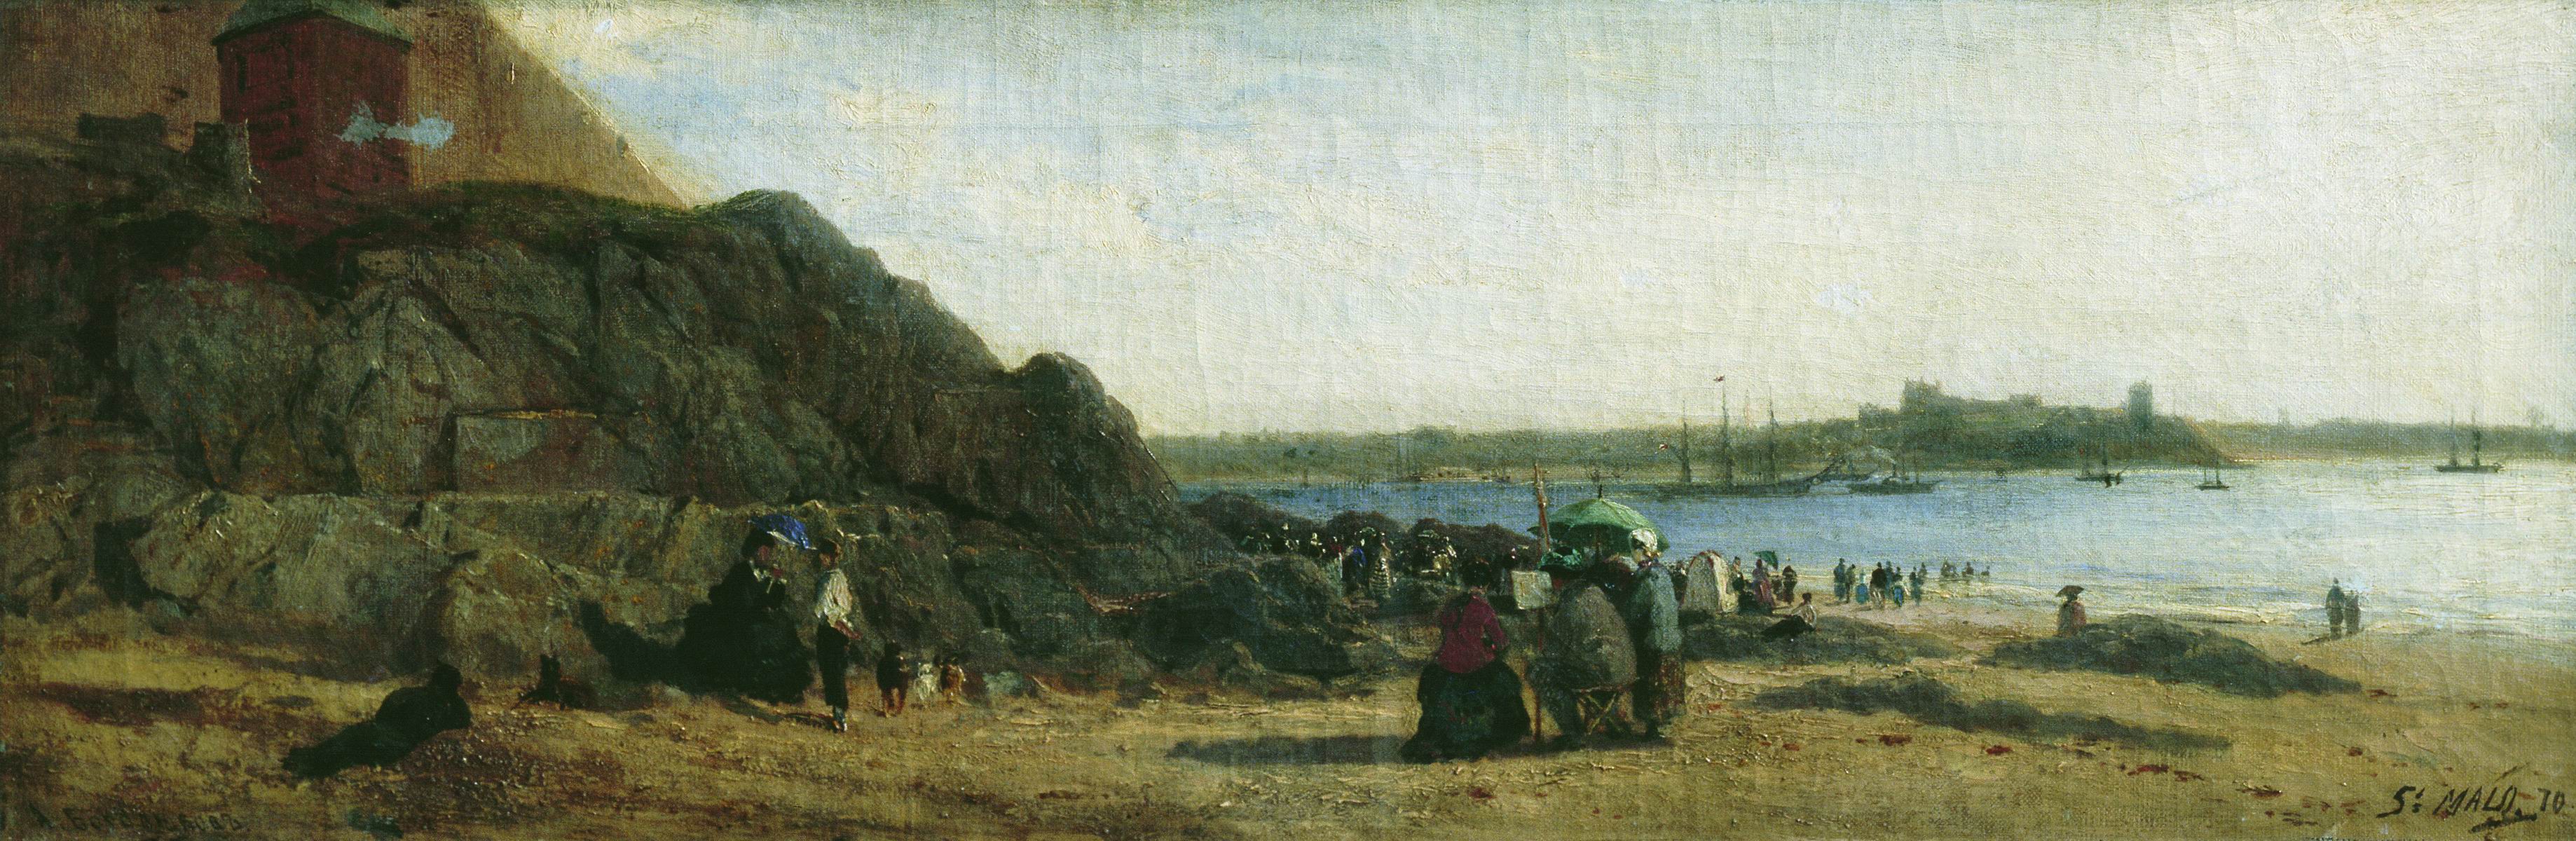 Боголюбов. Сен-Мало. 1870